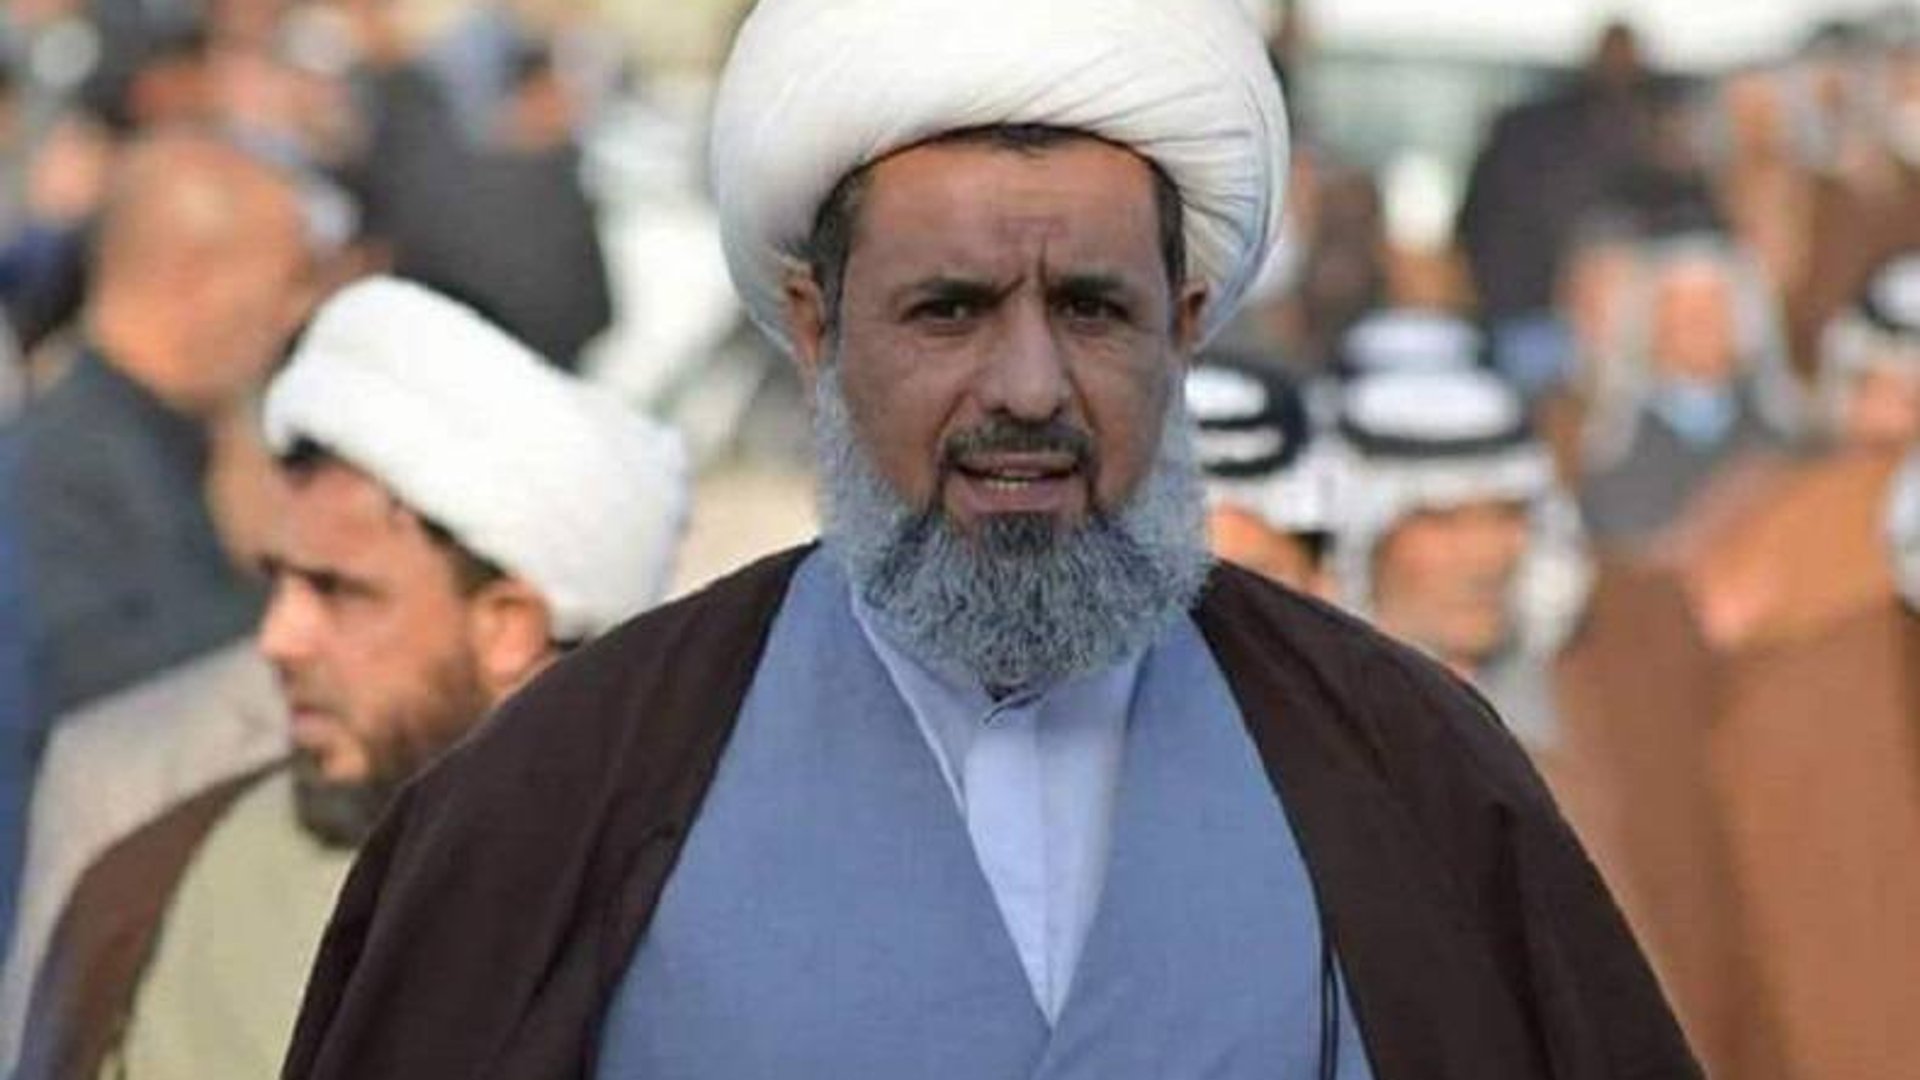 مكتب الصدر يقرر خلع الزي الحوزوي عن جواد الحجيمي وغلق صفحته الشخصية